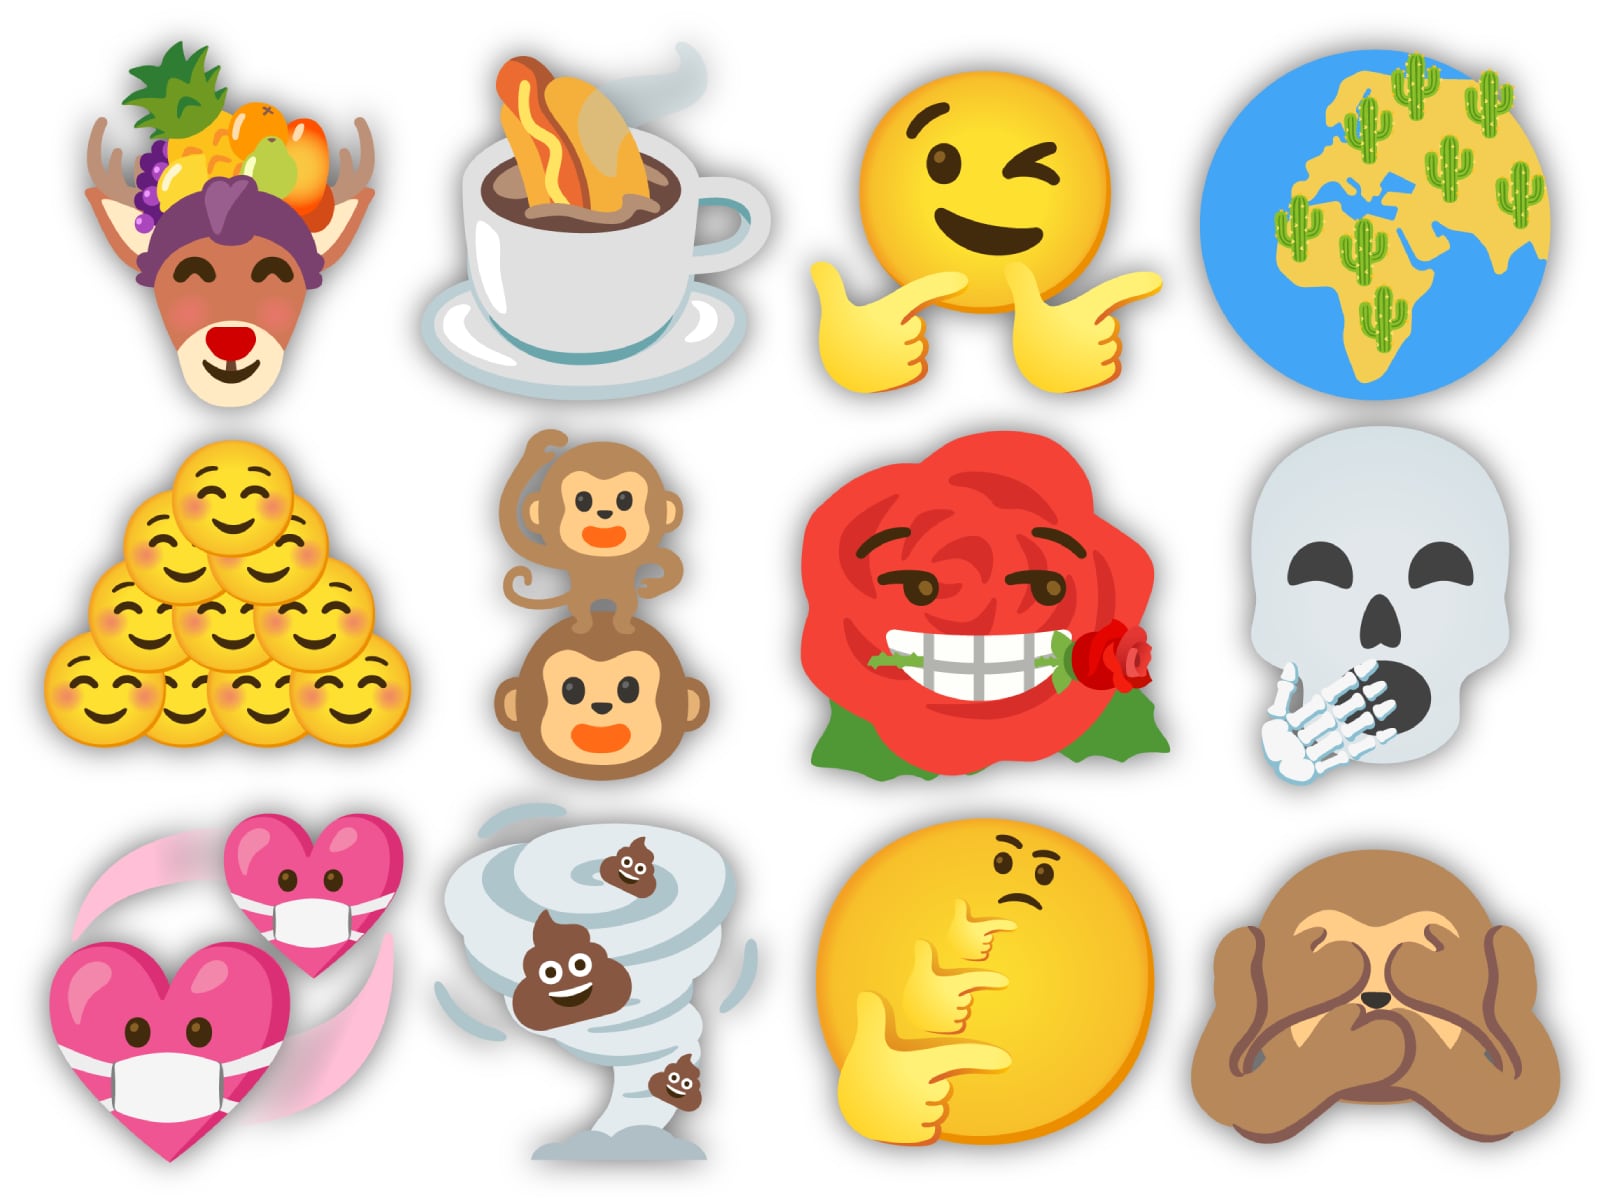 Ecco tutte le emoji strane, divertenti, assurde e strampalate che potete creare con GBoard